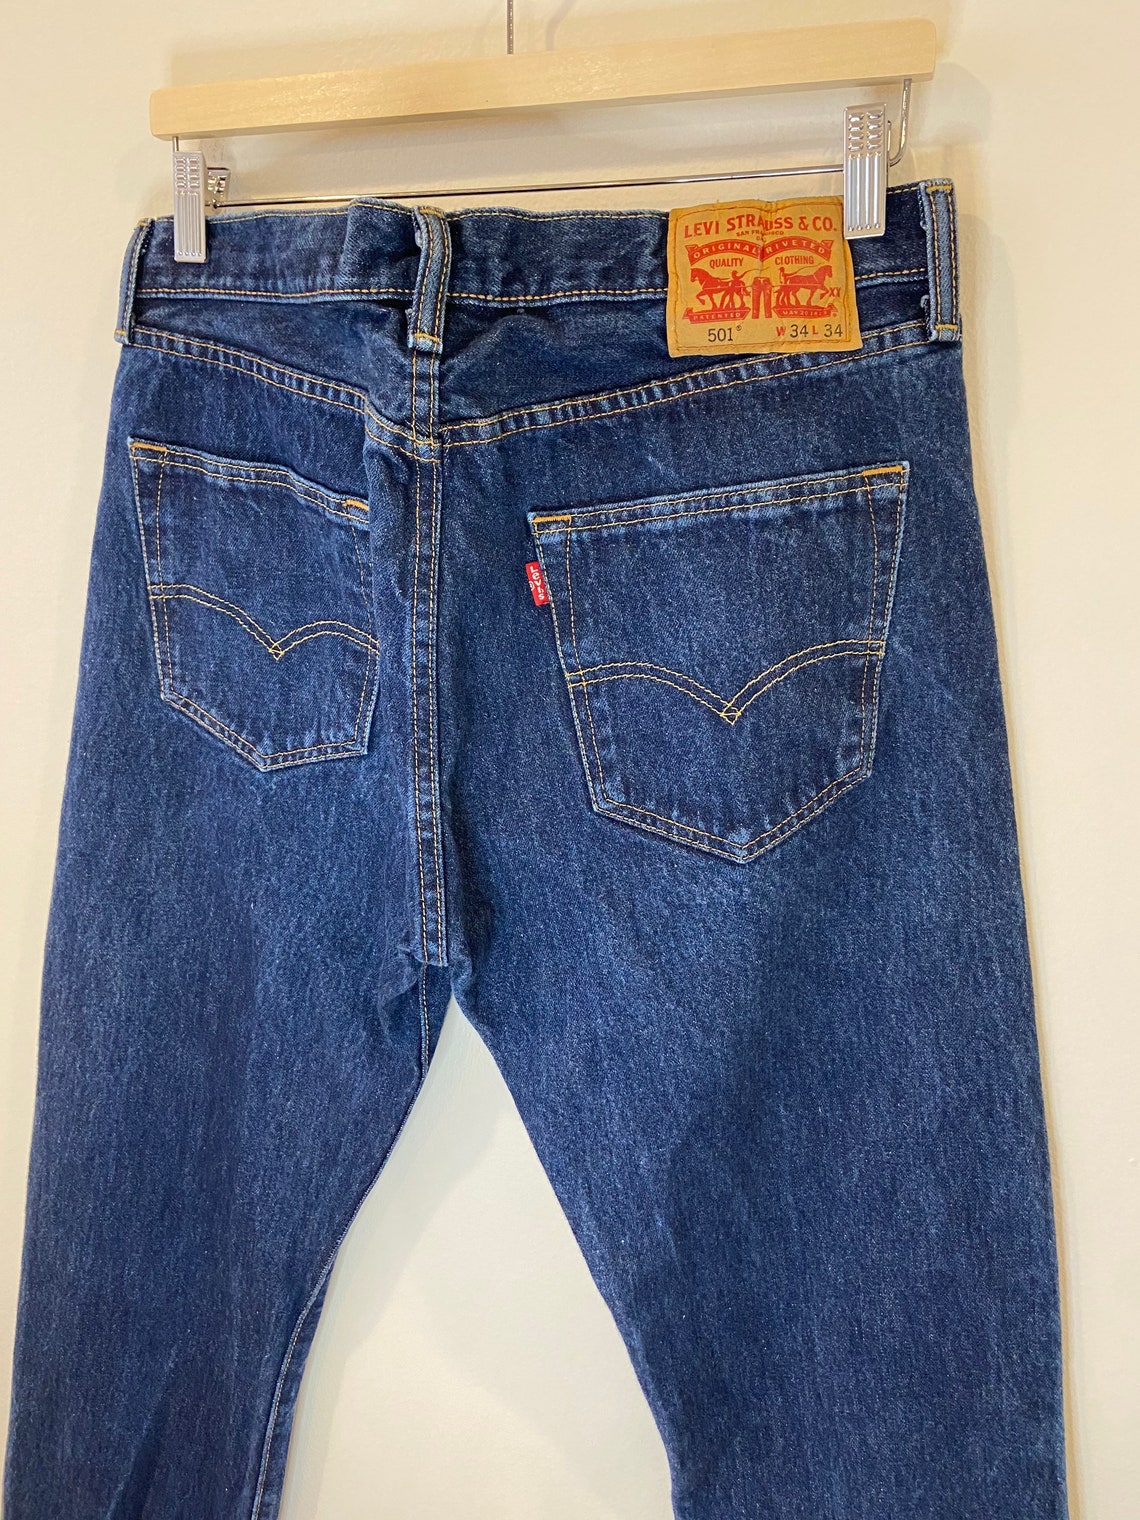 Vintage Levis 501 jeans size W34 L34 | Etsy